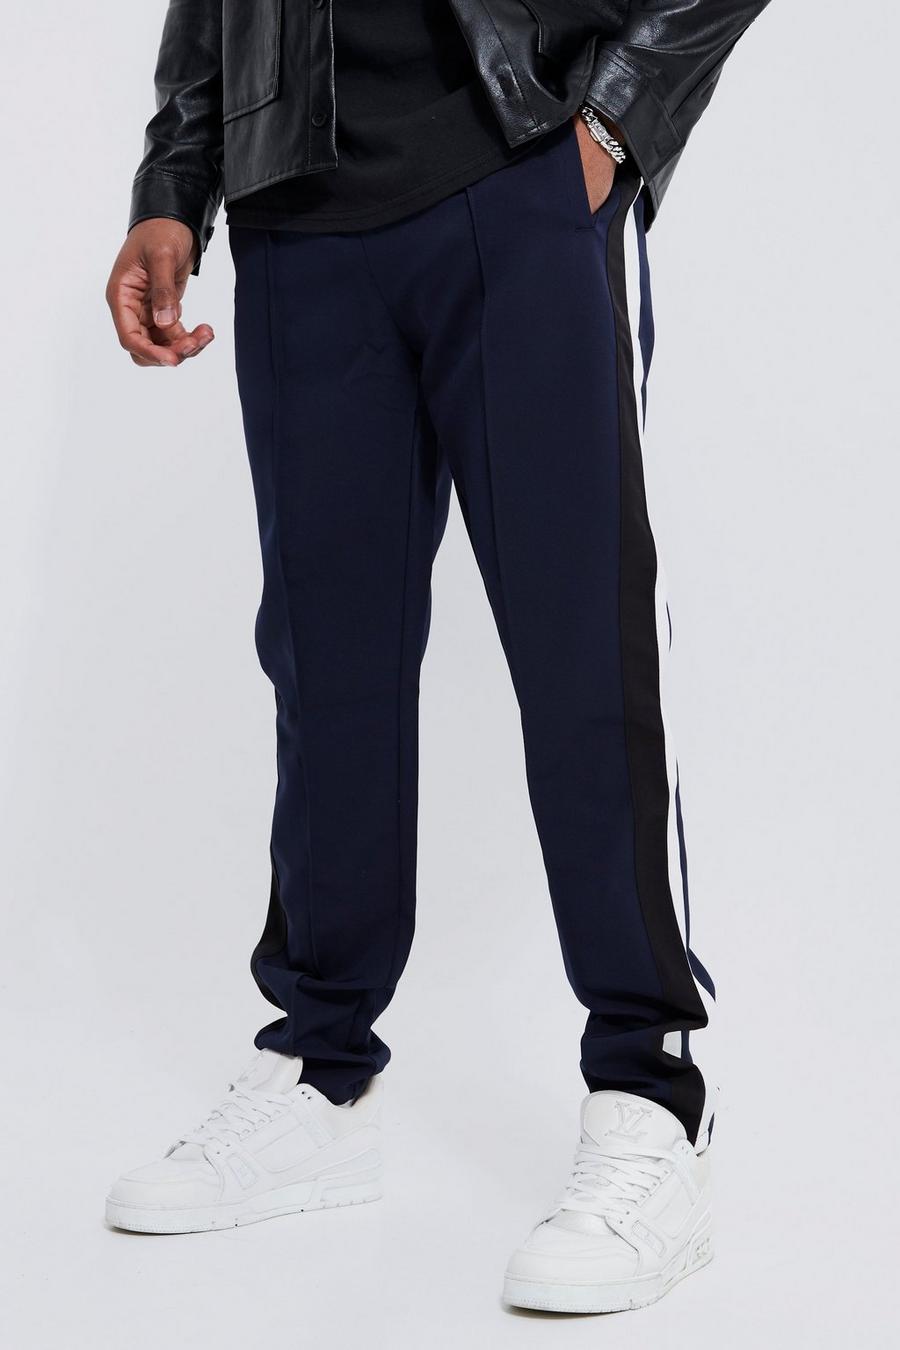 Pantalón Tall entallado con estampado universitario, Navy